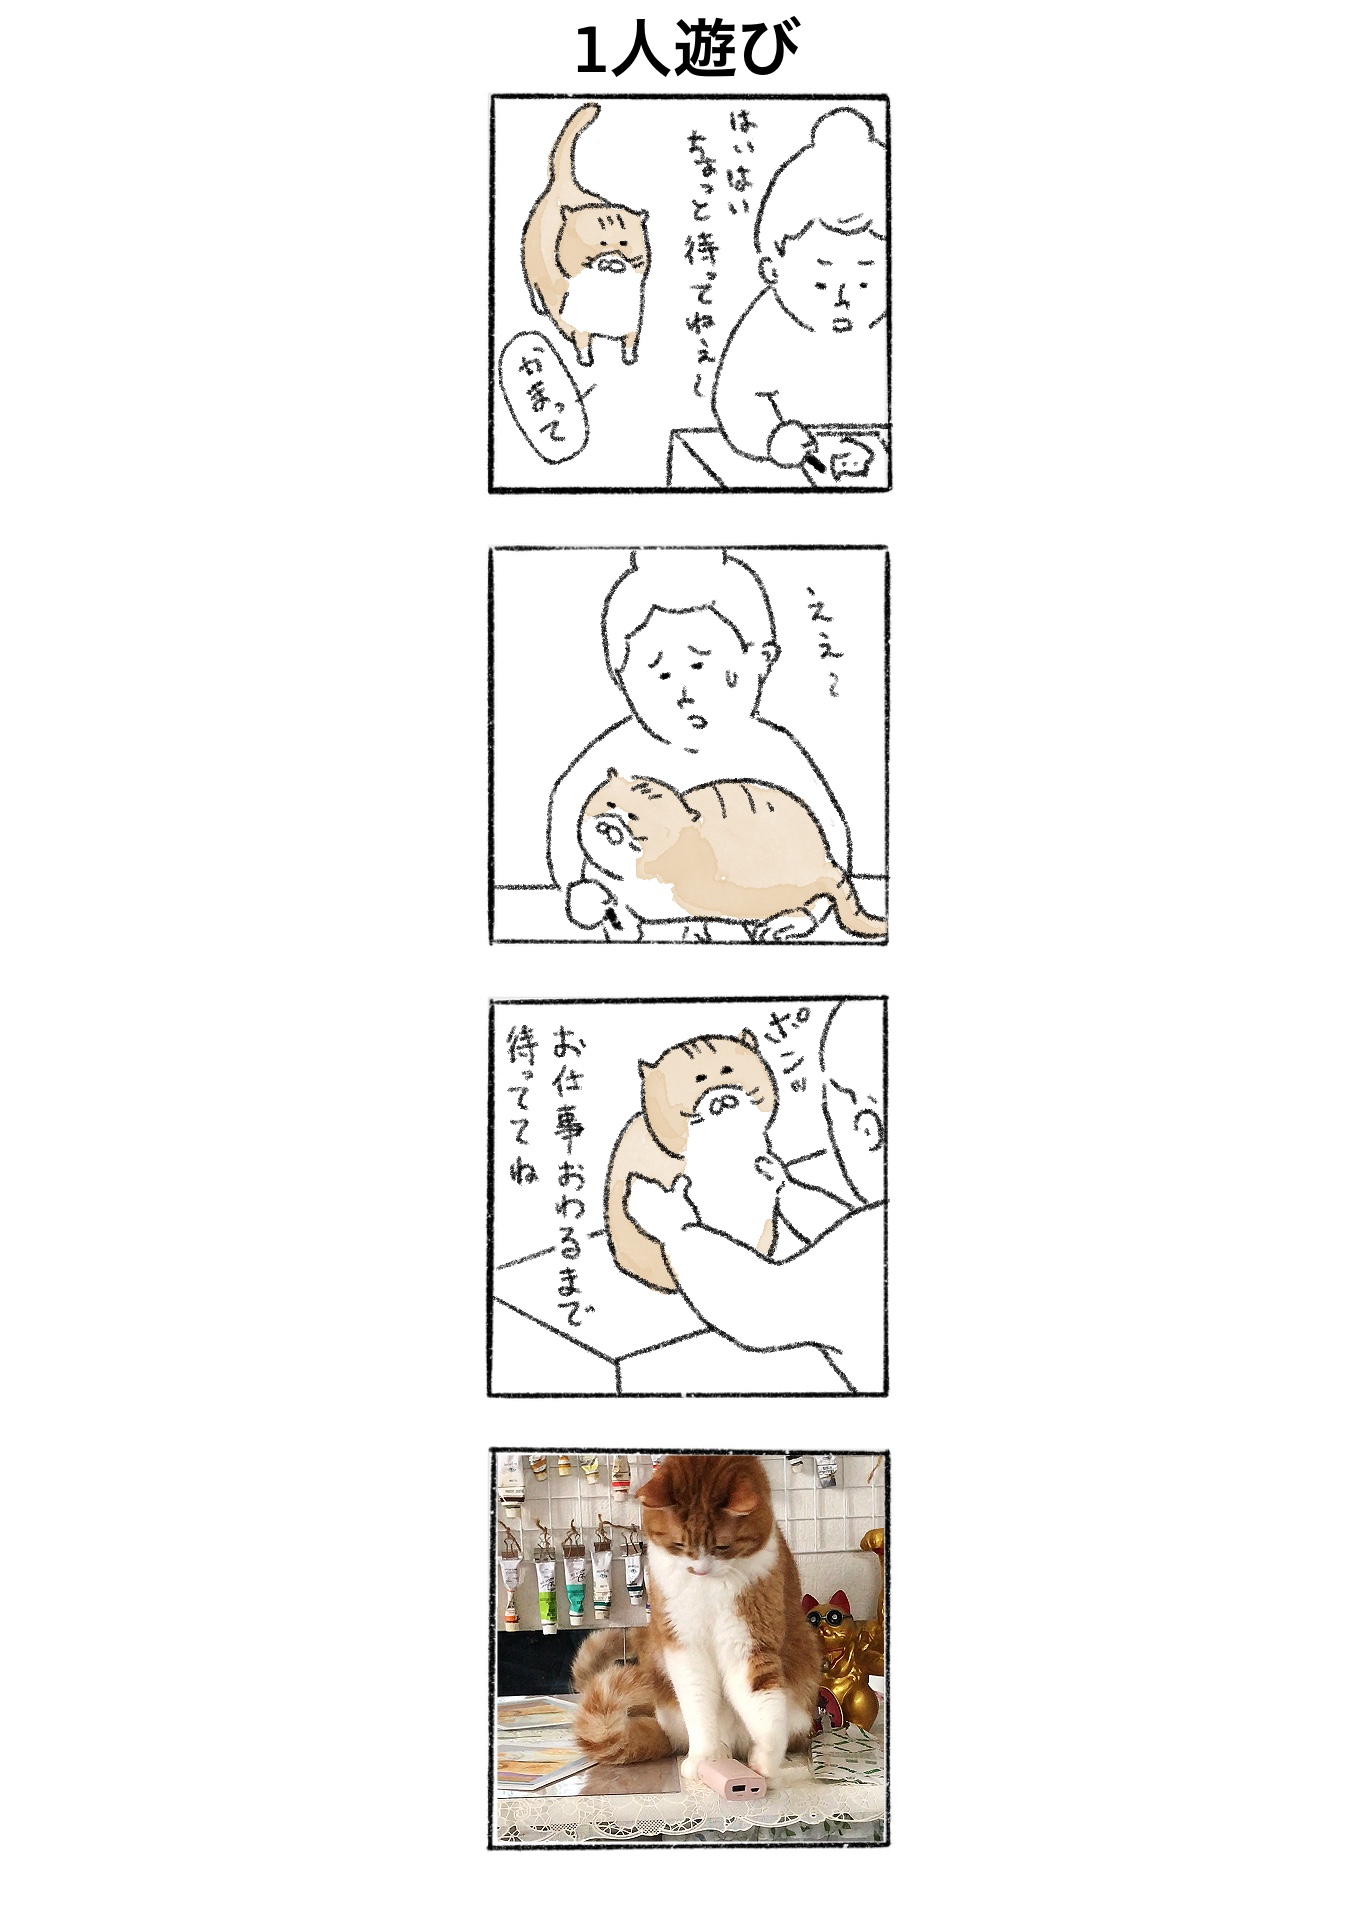 【ゆる猫4コマ】#006 1人遊び